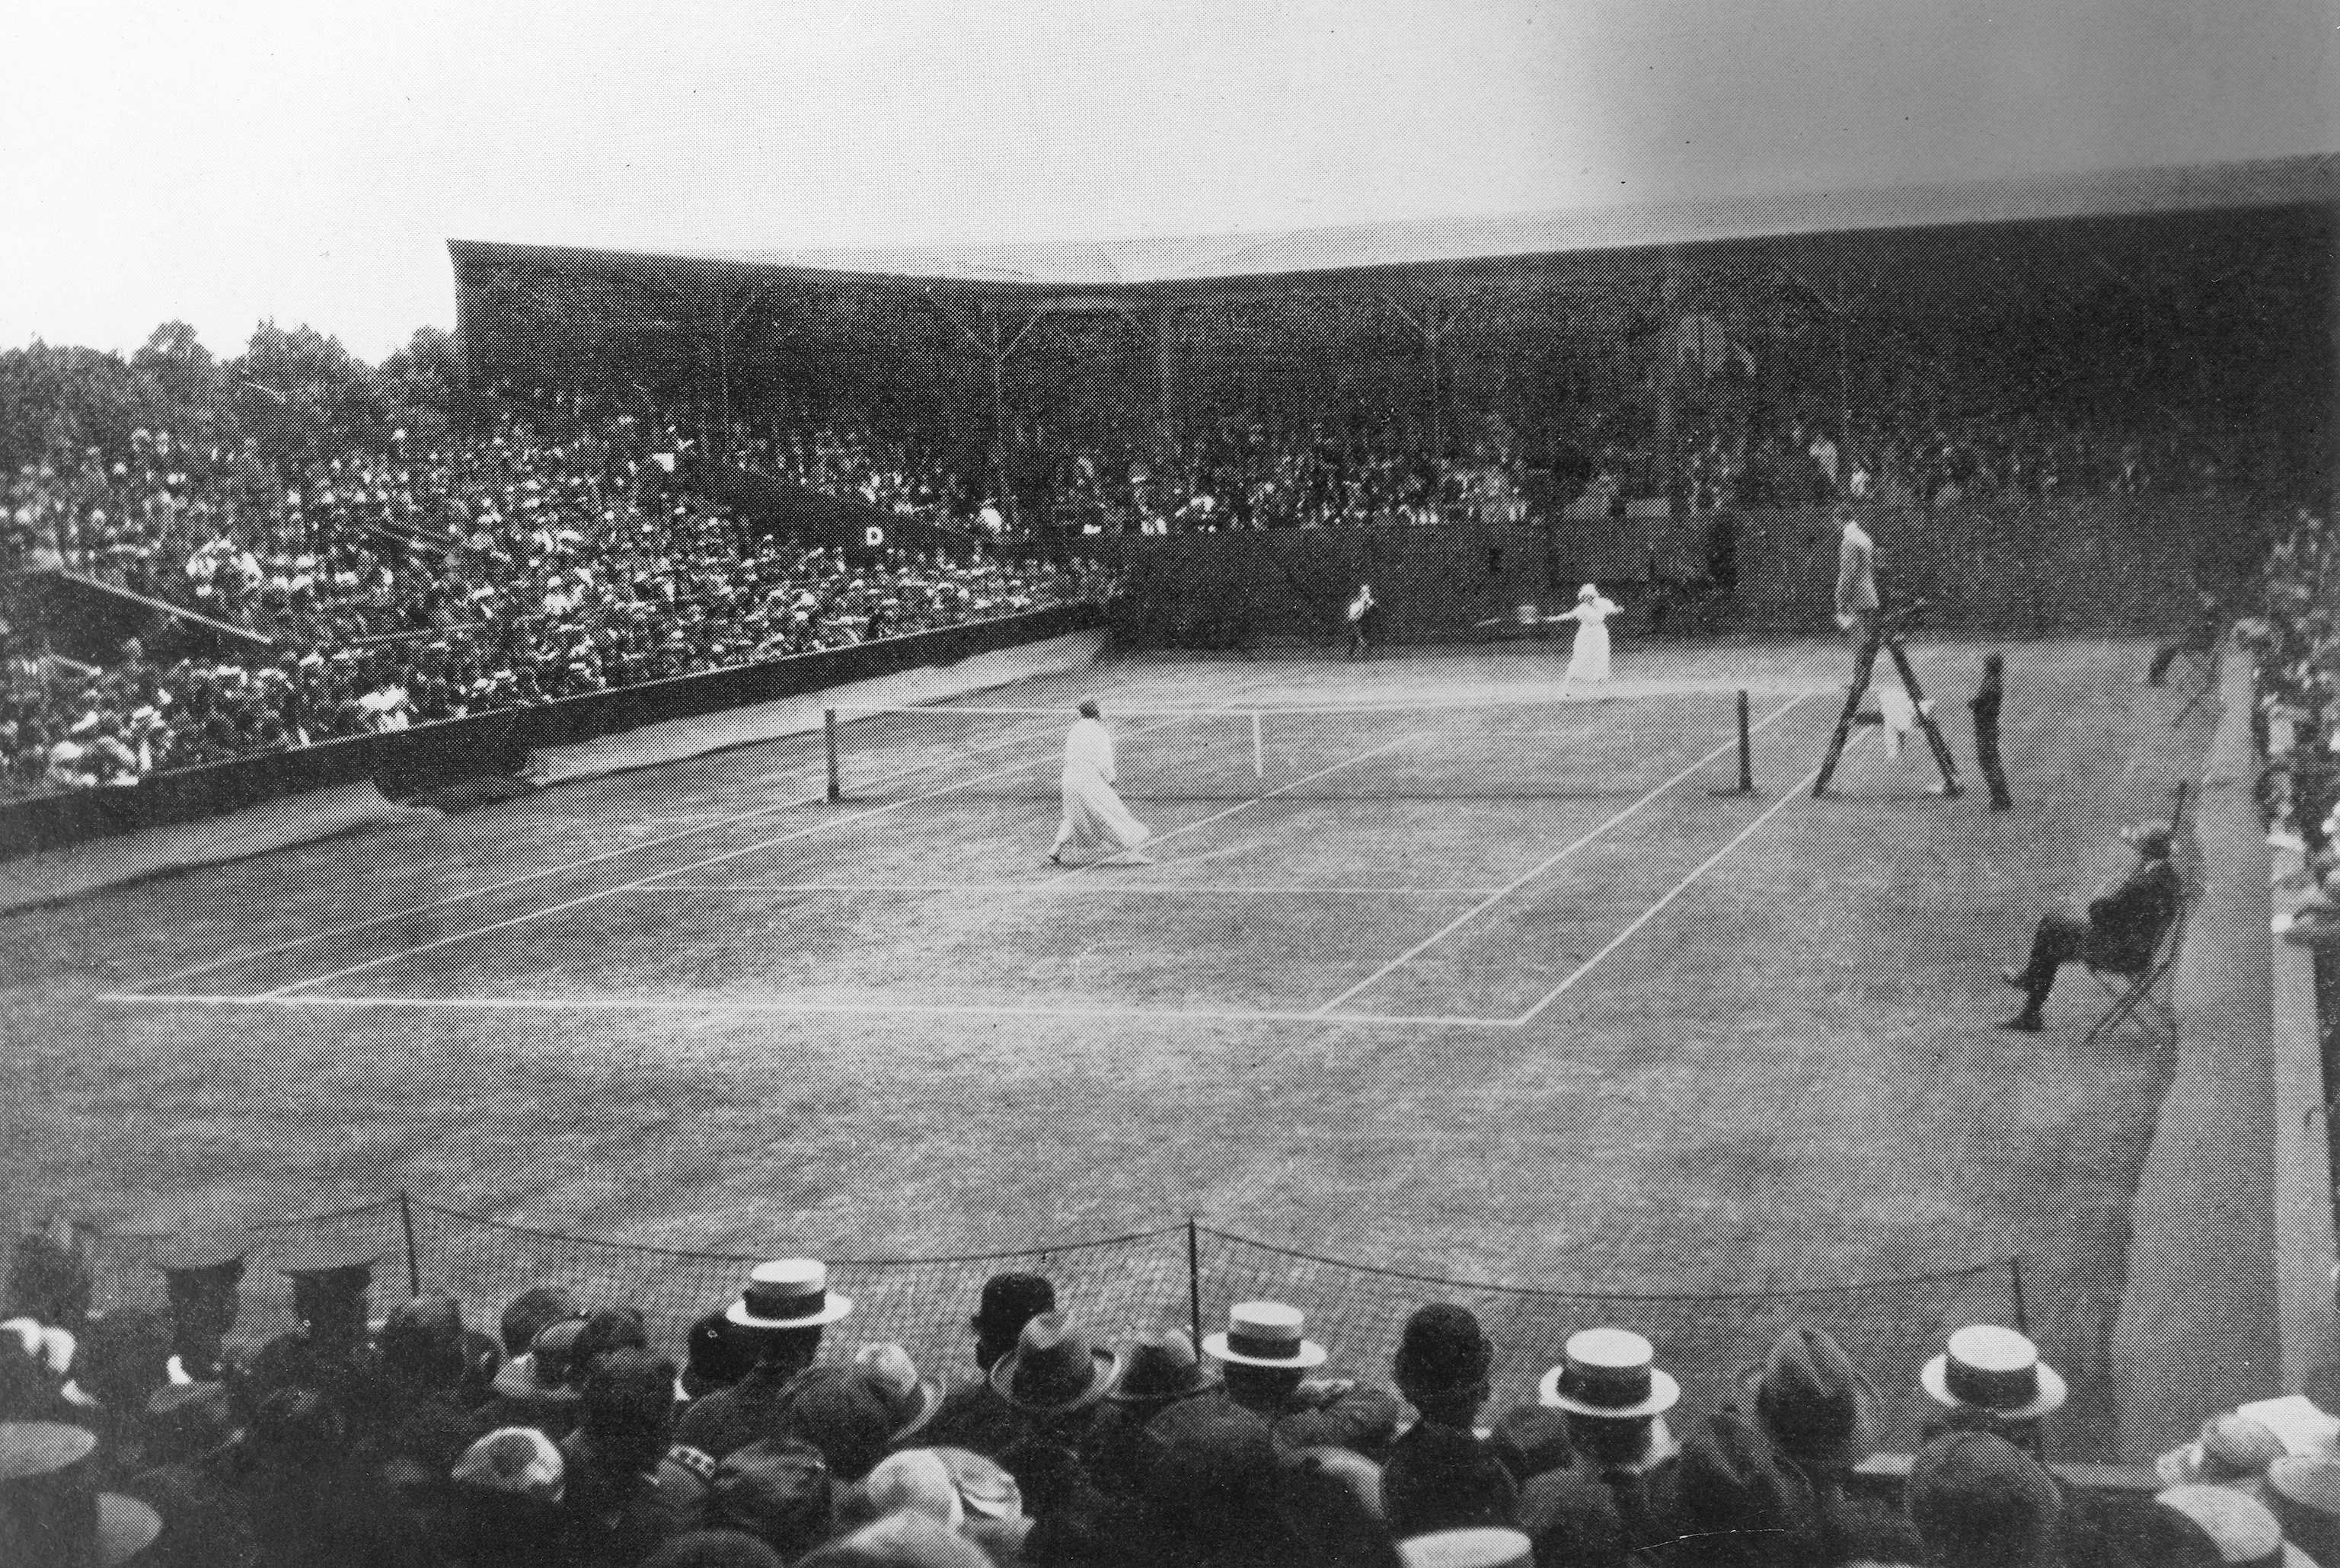 Celebrating a special tennis centenary